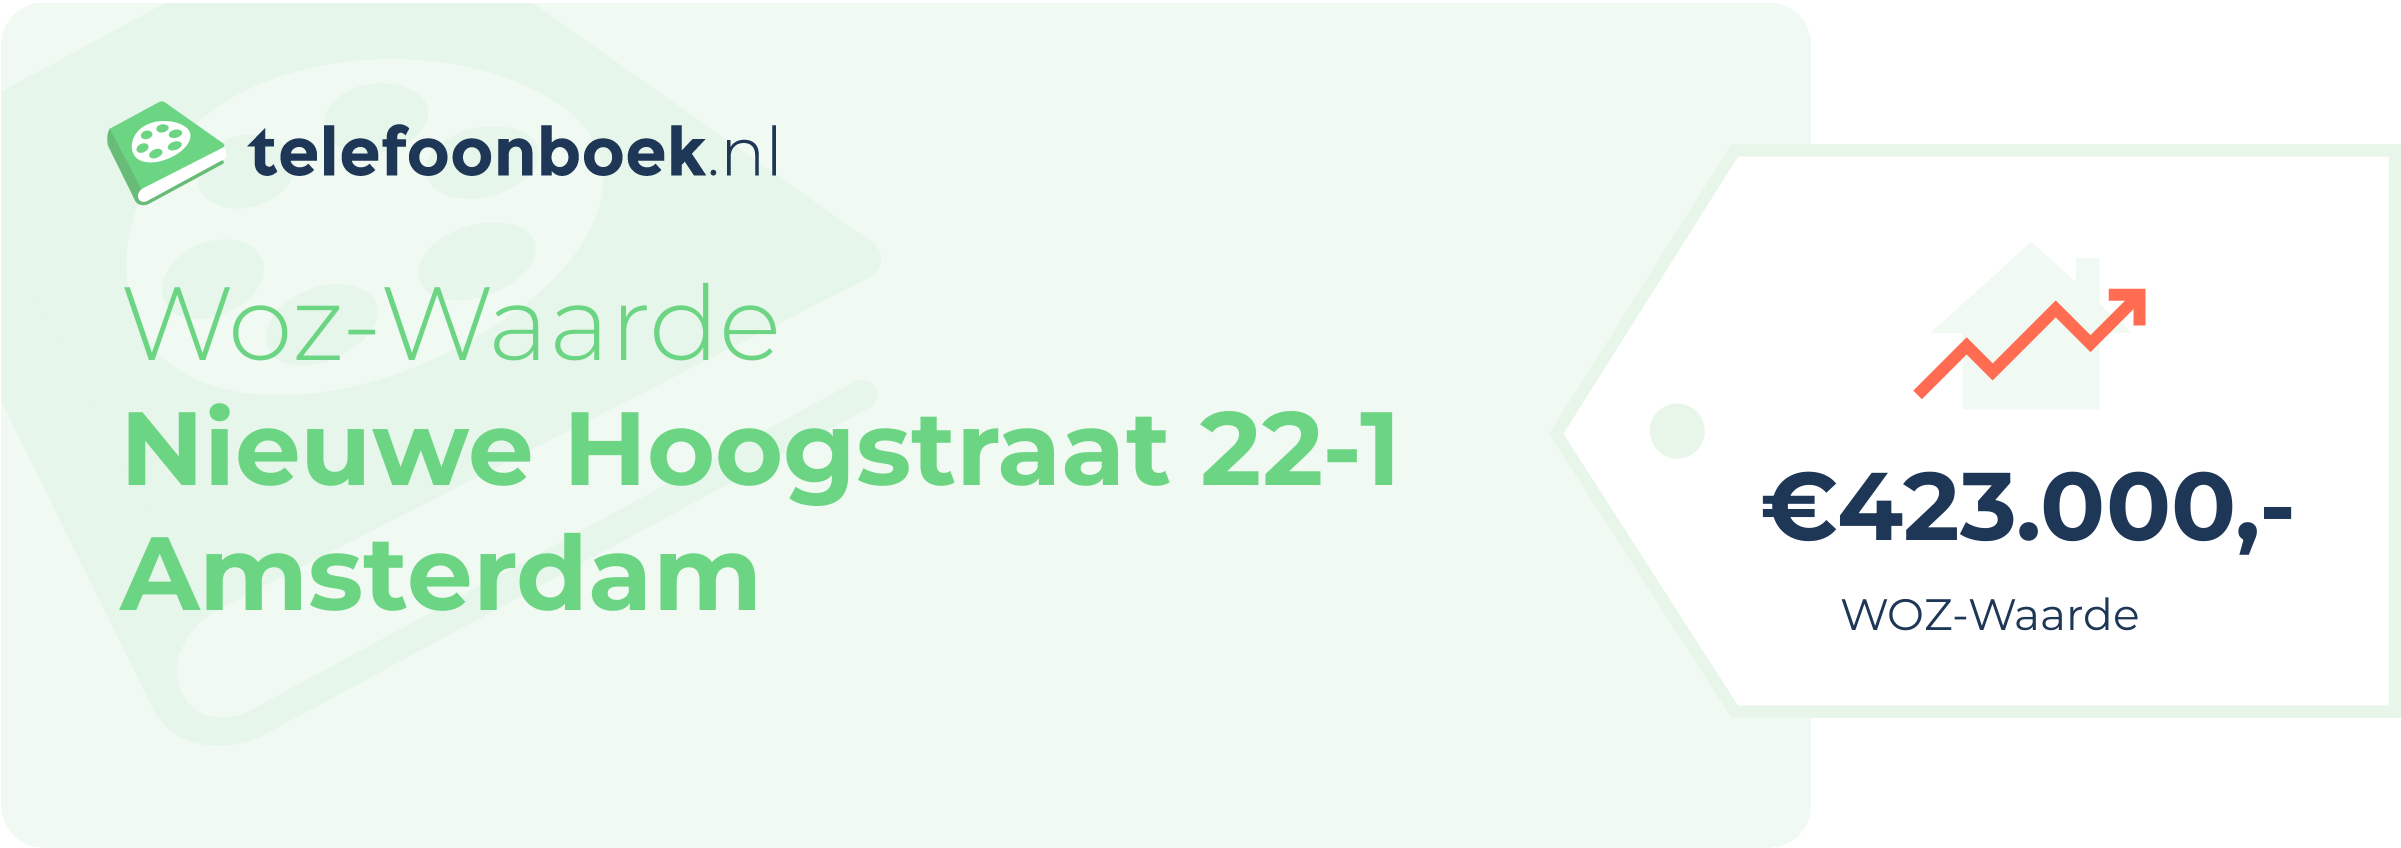 WOZ-waarde Nieuwe Hoogstraat 22-1 Amsterdam